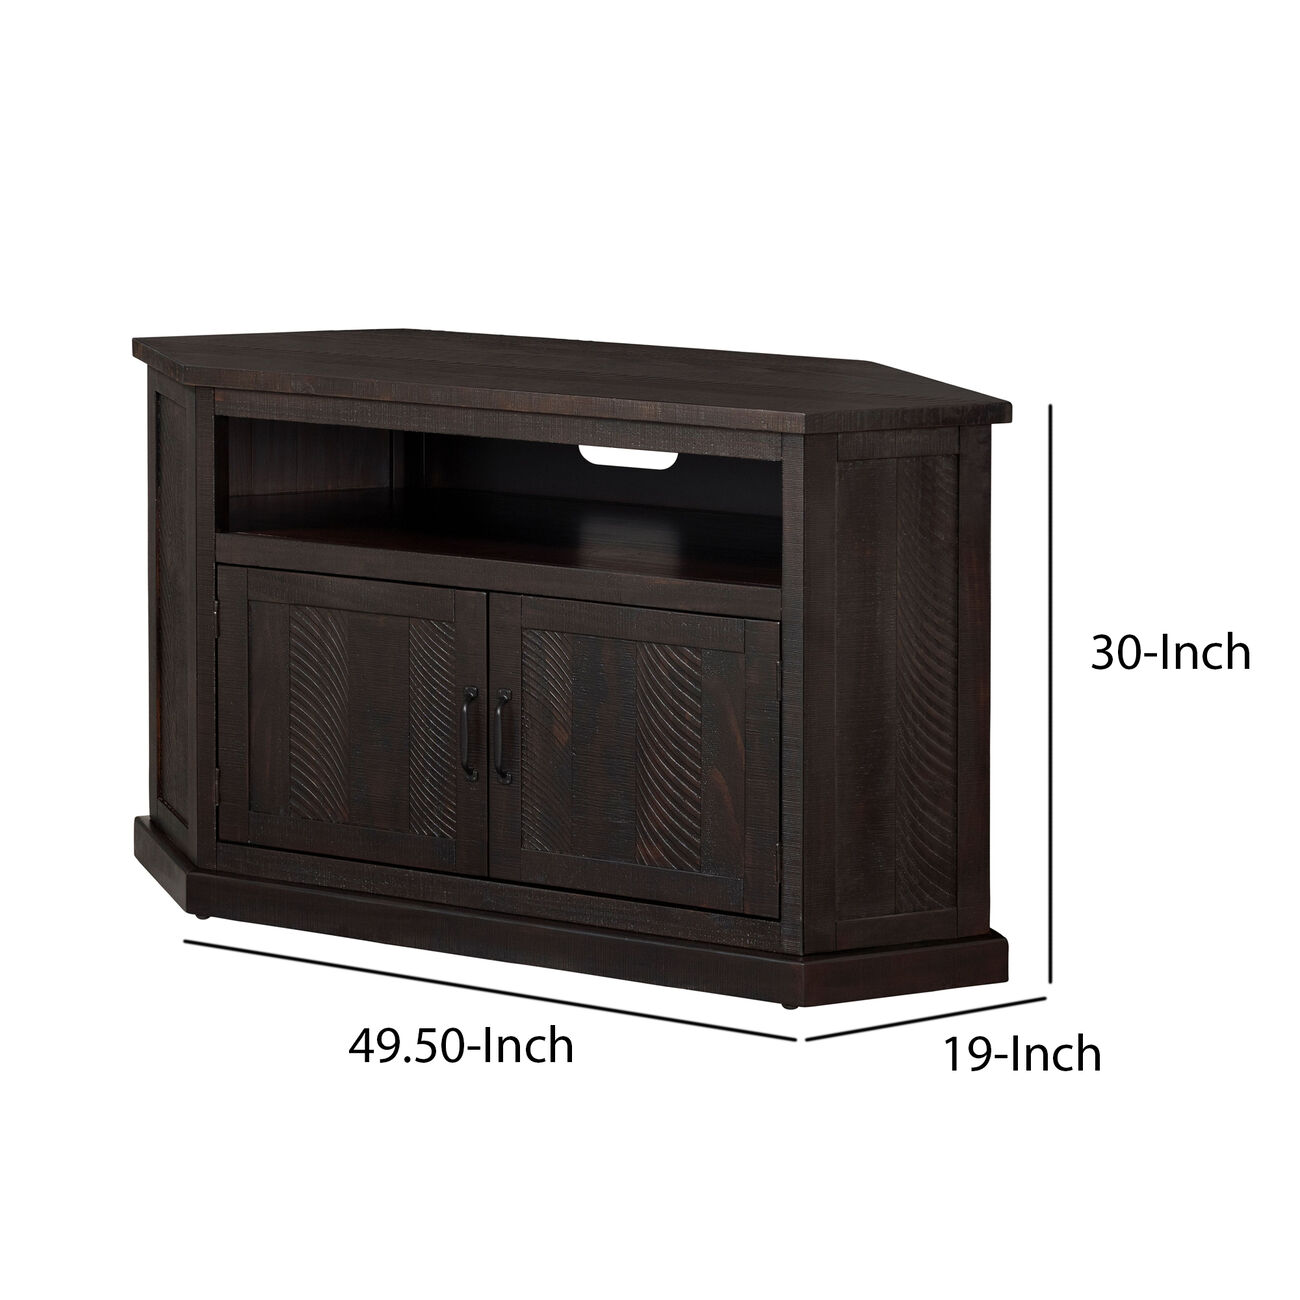 Rustic Wooden Corner TV Stand with 2 Door Cabinet, Espresso Brown